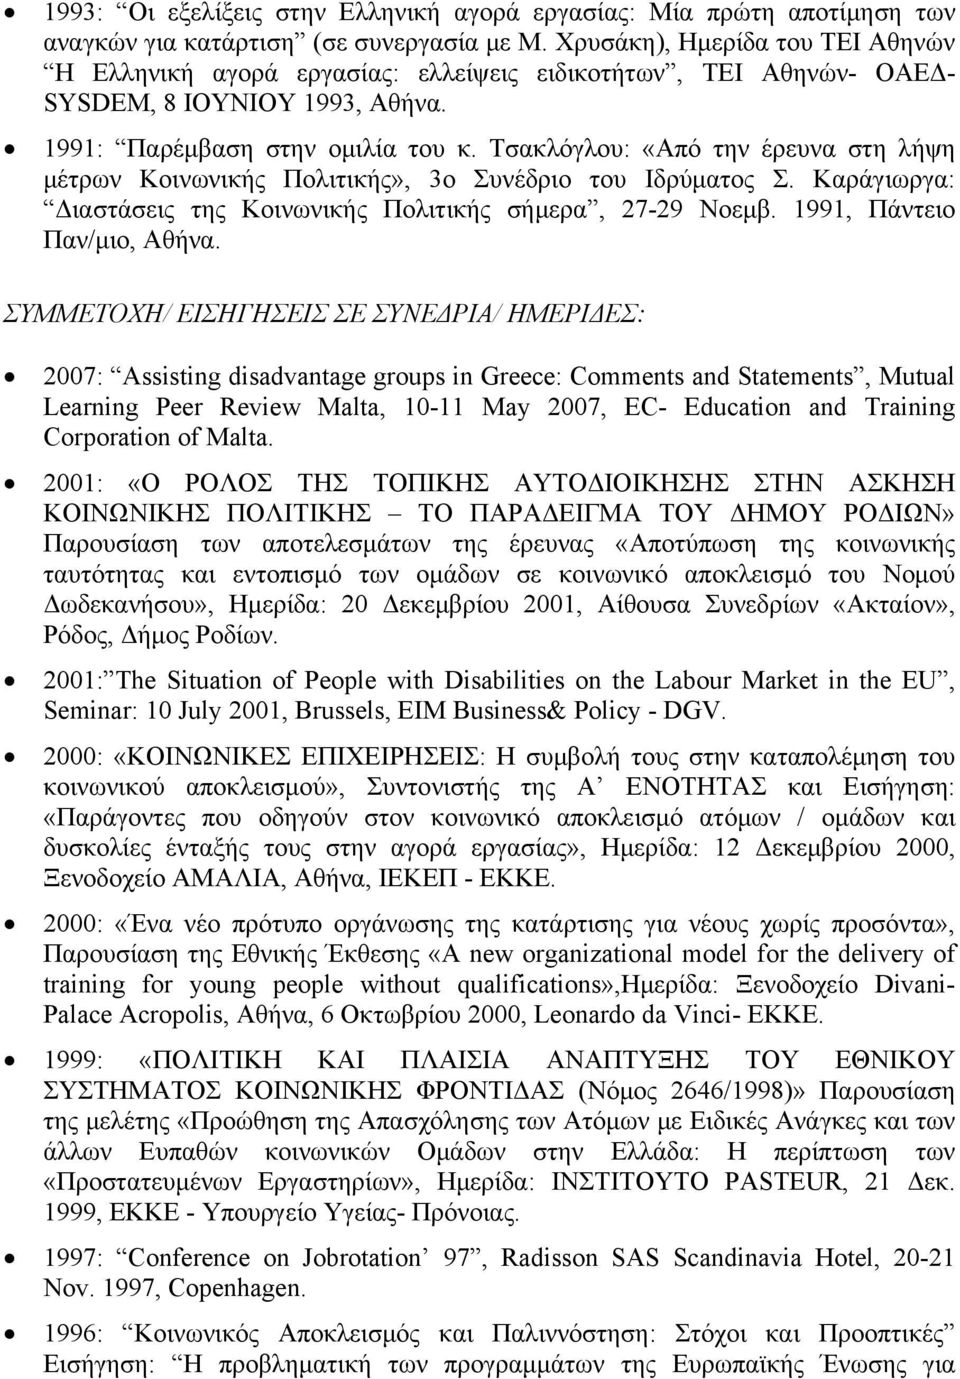 Τσακλόγλου: «Από την έρευνα στη λήψη μέτρων Κοινωνικής Πολιτικής», 3ο Συνέδριο του Ιδρύματος Σ. Καράγιωργα: Διαστάσεις της Κοινωνικής Πολιτικής σήμερα, 27-29 Νοεμβ. 1991, Πάντειο Παν/μιο, Αθήνα.